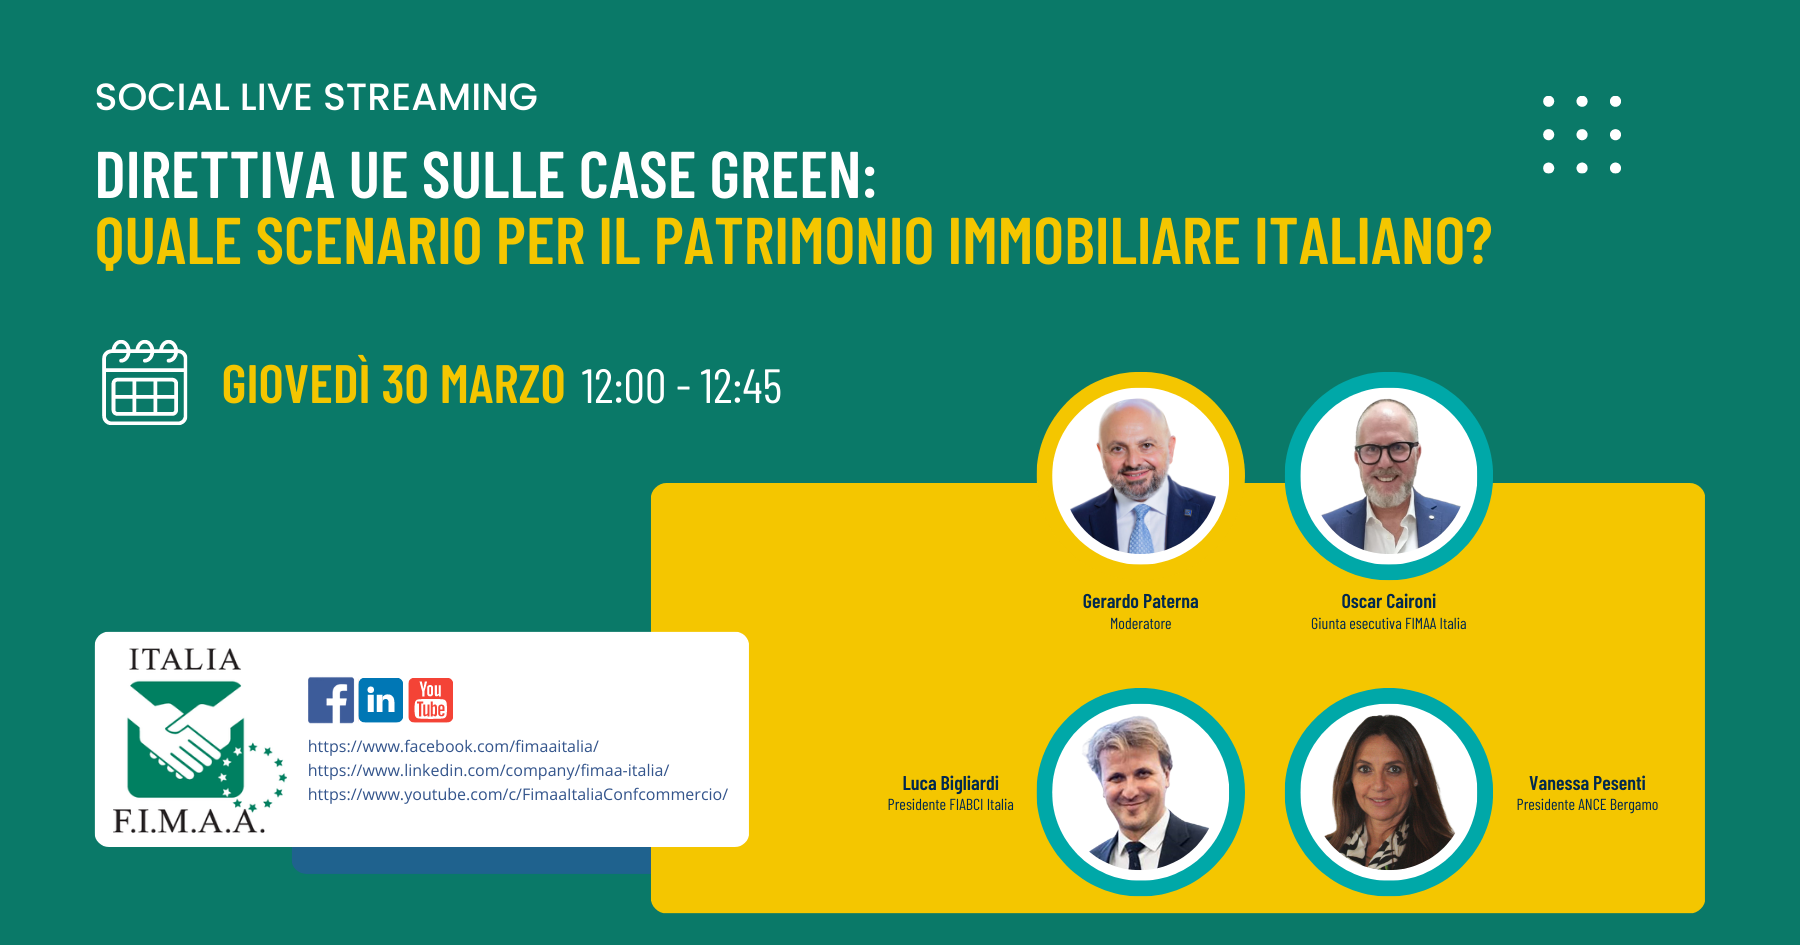 Direttiva UE sulle case green: quale scenario per gli immobili in Italia? - live streaming FIMAA